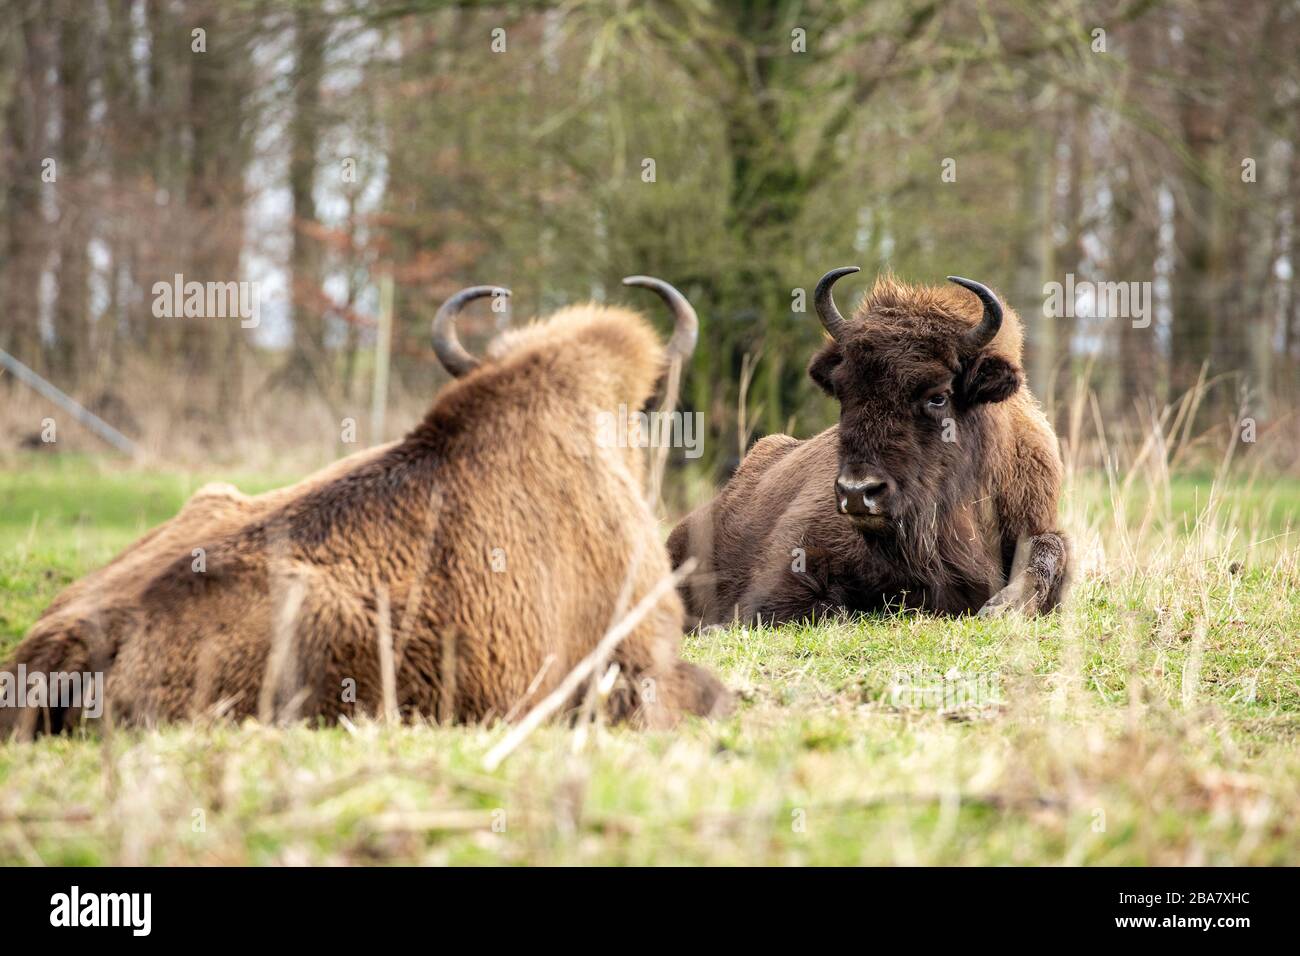 Bison europeo (Bison bonasus) conosciuto anche come wisent, zubr, o il bison di legno europeo. A Lelystad Holland. Foto Stock